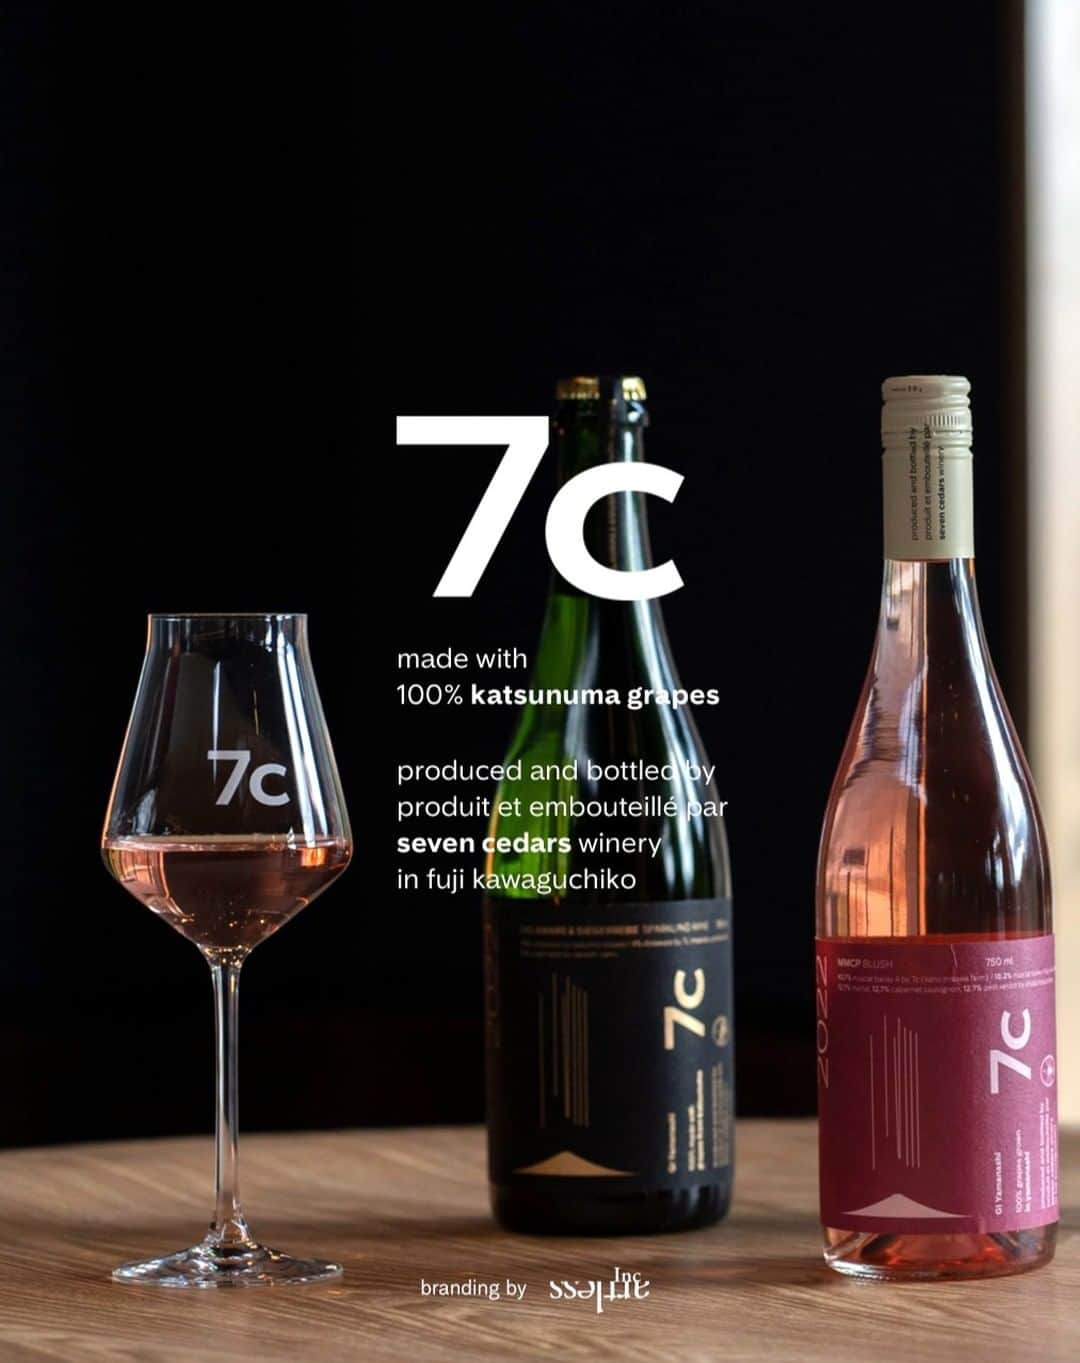 川上俊のインスタグラム：「[branding] 7c winery (seven ciders winery) : www.7cwinery.com  branding & design by artless Inc. @shunkawakami   河口湖にはじめてオープンしたワイナリー「7c | seven cedars winery」@7cwinery @7cwinery_store 。新たなコンセプトの日本ワインをグローバルに届くようにブランドデザインを行ない、また、できれば日本のワインの価値やポジショニングを上げるためにもデザインのクオリティも世界基準で行うことを意識しデザインしています。  日本醸造家100人にも選ばれている女性醸造家の鷹野ひろ子さんの葡萄栽培者に光を当てたワイン造り。全ての製品に栽培者の名前と、葡萄の品種・構成比率を明記し、デザインやカラーなどにも反映させています。  「7c | seven cedars winery」の名は、オーナー家の家系と繋がってもいる 河口浅間神社（ 865年奉斎 ）の神木・７本の「千本杉」を見させてもらった時の強い記憶から「千年杉」由来のブランドネーミングとして名付けさせてもらいました。  このワインブランドが、日本を代表するようなブランドへ成長していくことを楽しみに並走していこうと思います。  ー We are branding a new winery that opened for the first time in Kawaguchiko Japan. We are designing a brand for a new concept of Japanese wine to reach a global market. We are also designing the quality of the design with an awareness of global standards in order to increase the value and positioning of Japanese wine, if possible.  #shunkawakami #artlessinc」